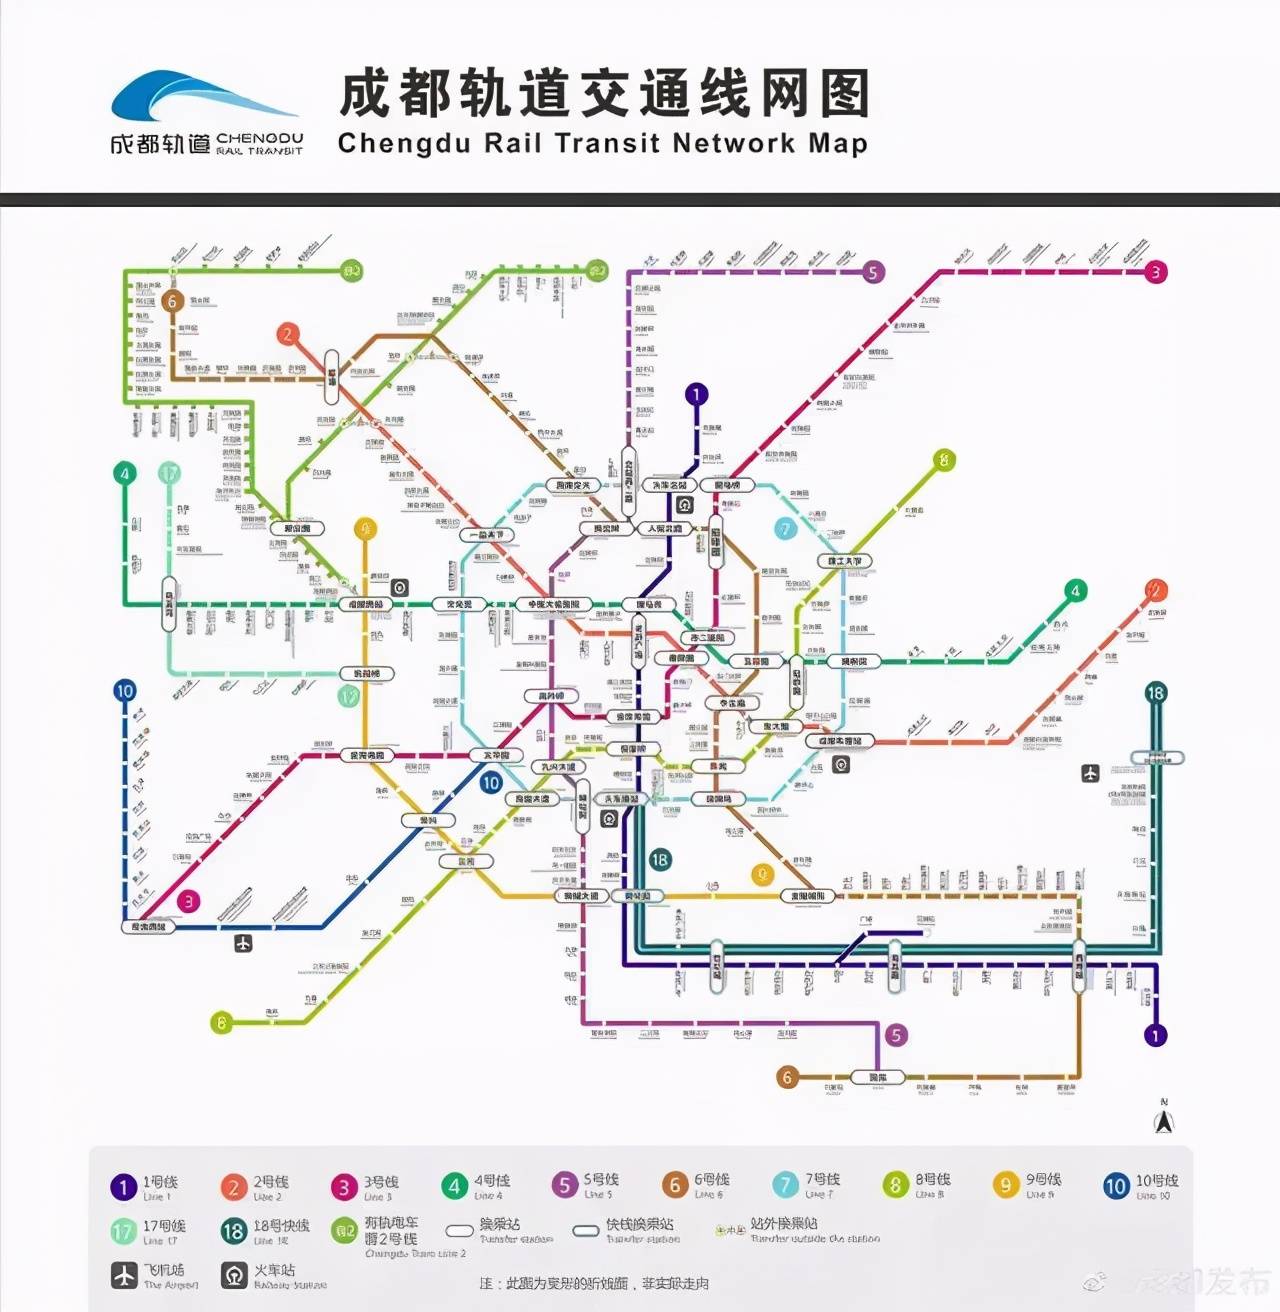 成都目前已建成投运的轨道交通线路图根据成都地铁官方网站显示,目前